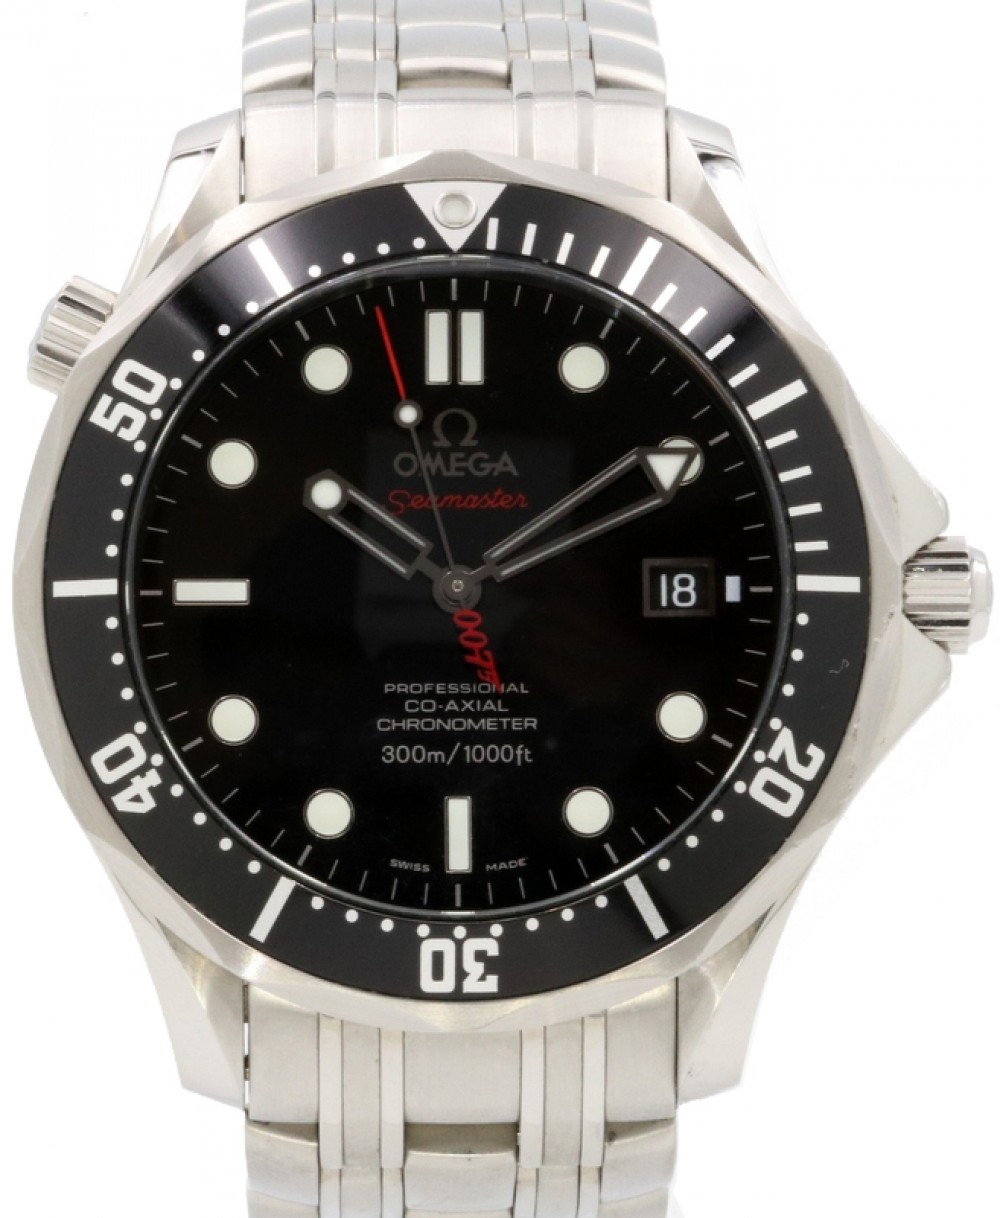 omega seamaster professional chronometer 007